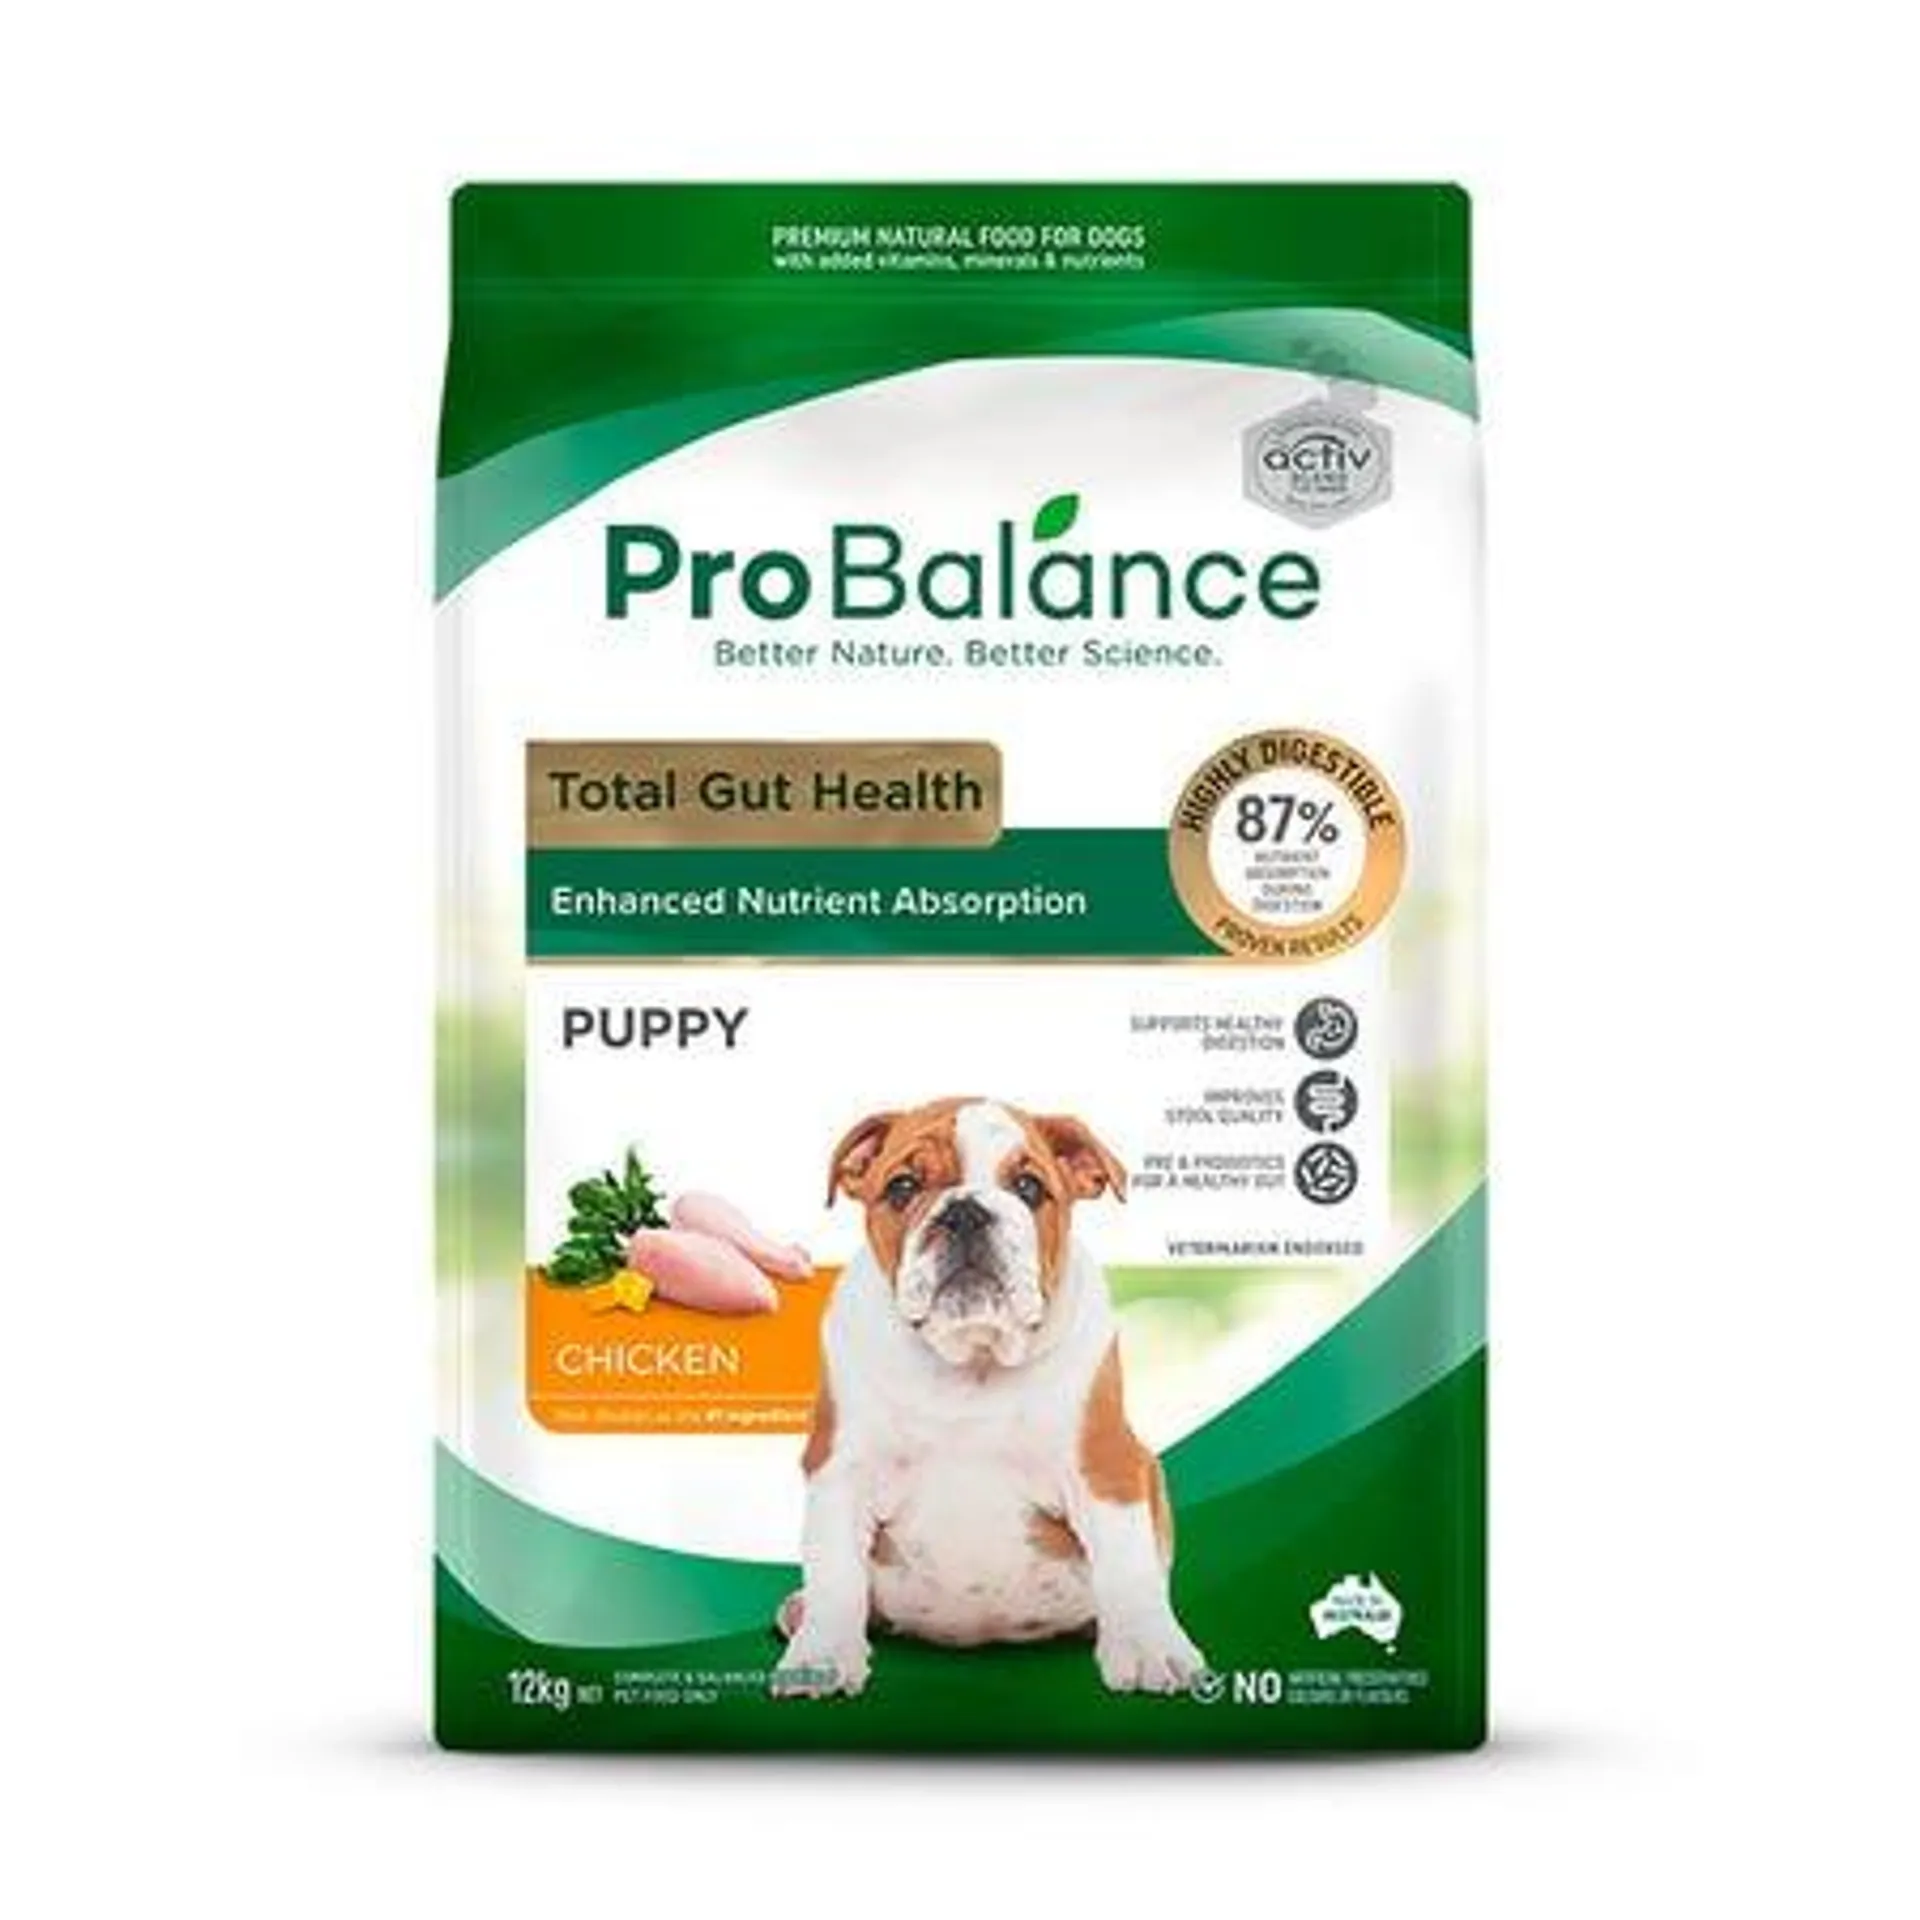 Probalance Total Gut Health Chicken Puppy Food